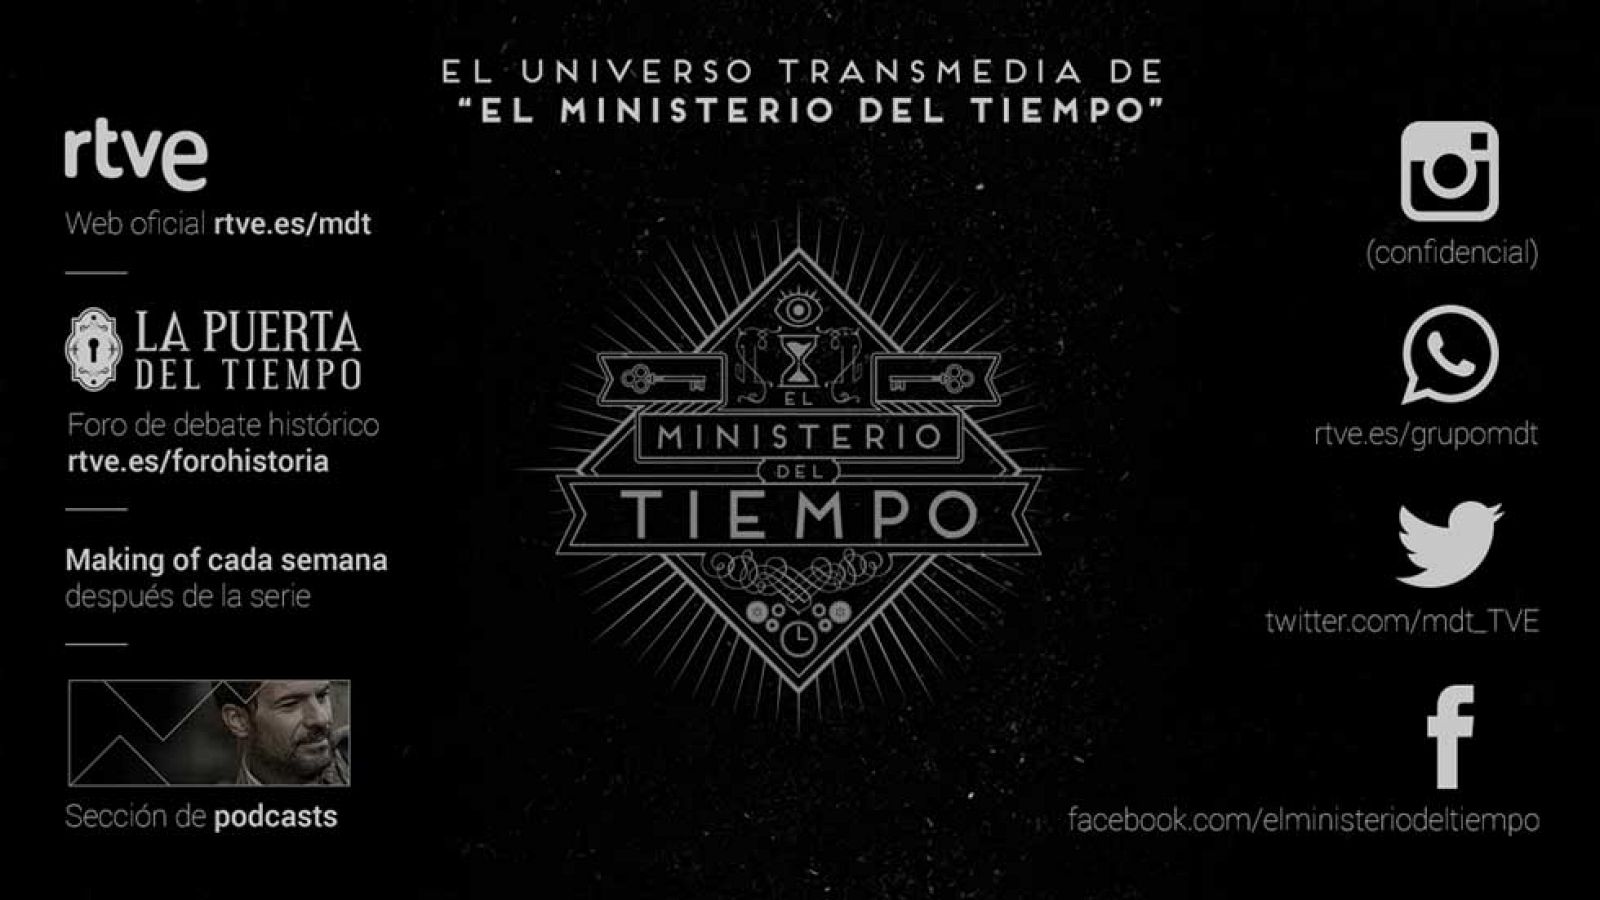 El Ministerio del Tiempo amplía su universo transmedia | RTVE.es